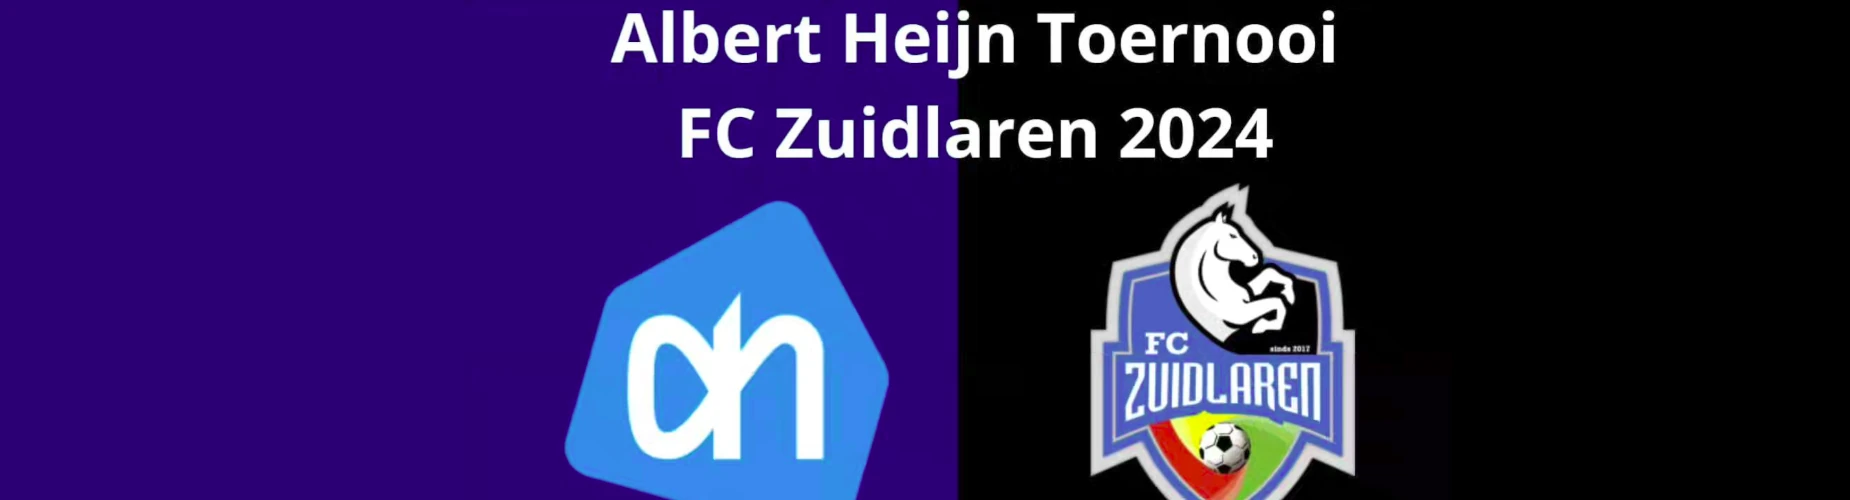 Banner - O10 - Albert Heijn toernooi FC Zuidlaren - FC Zuidlaren - Zuidlaren